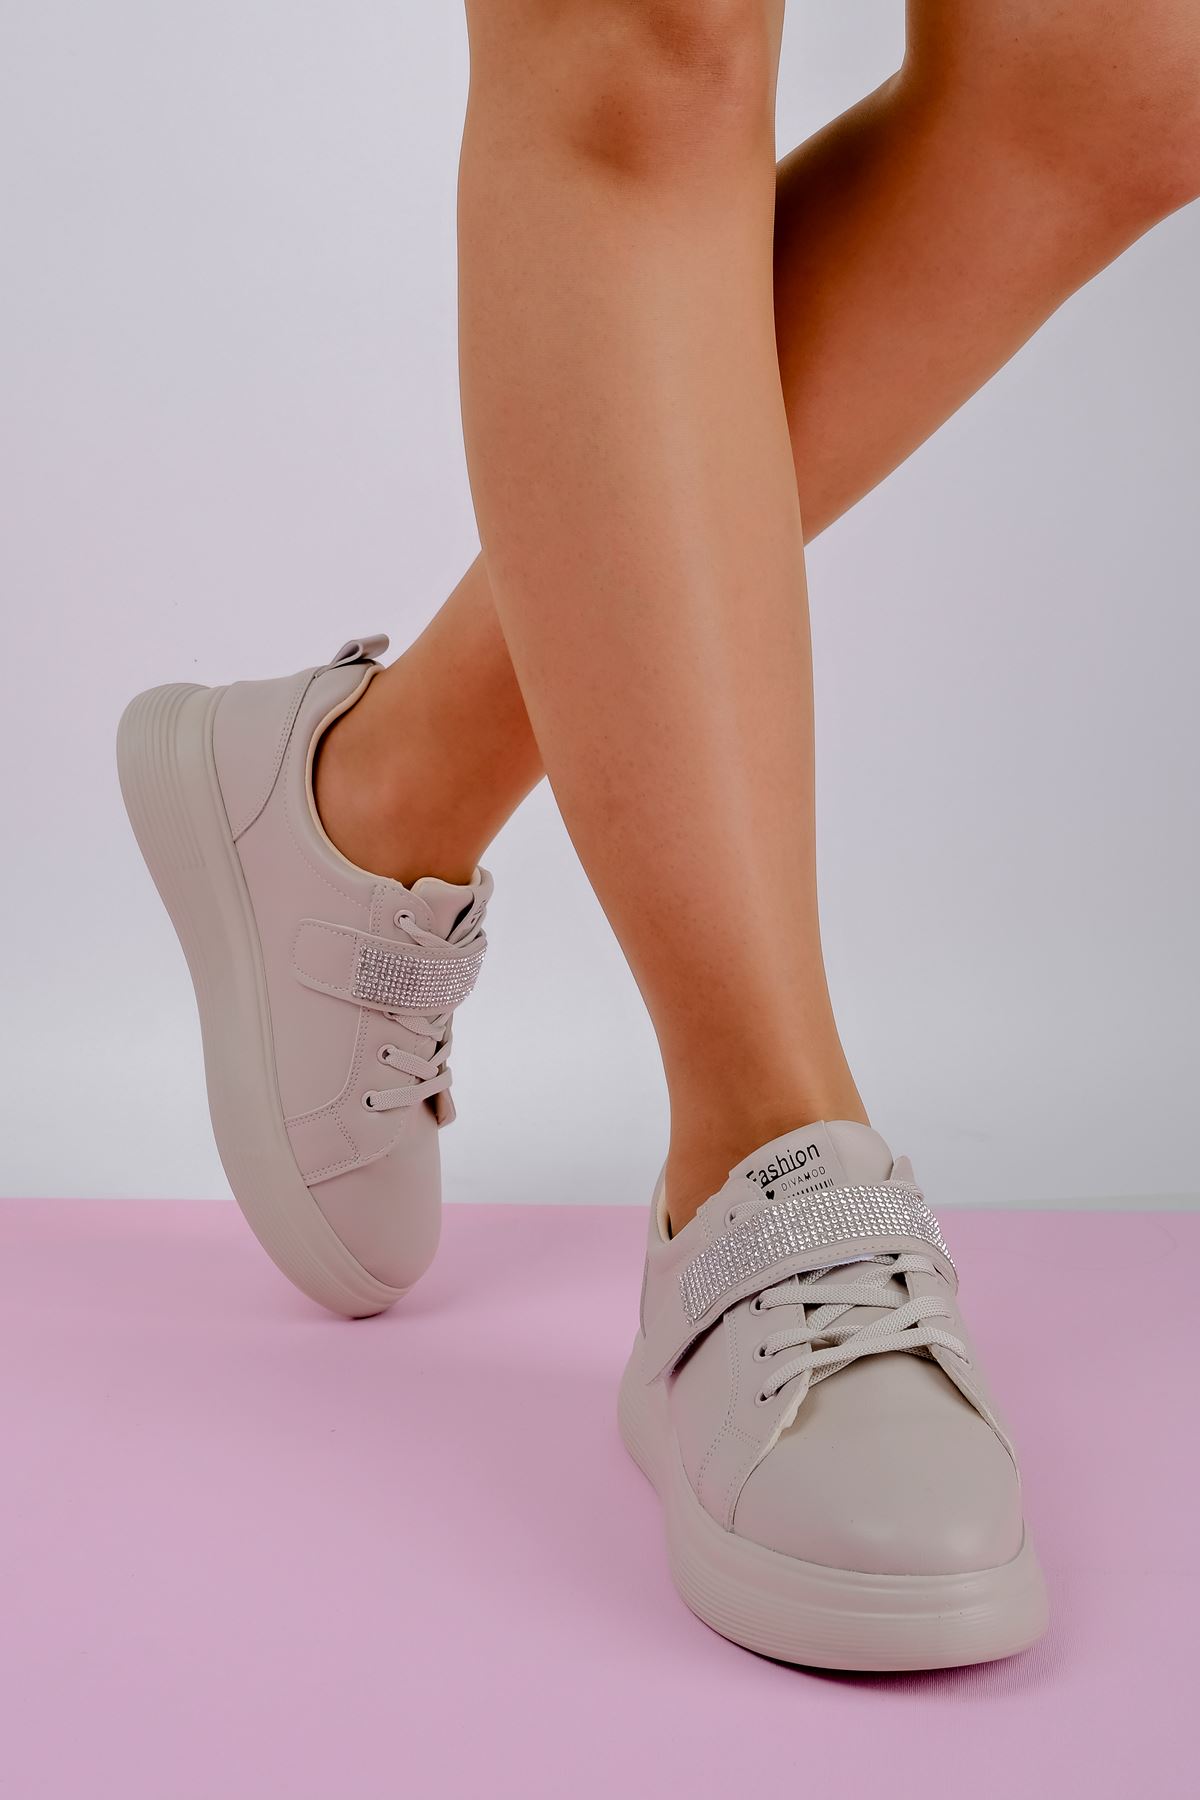 Mila Kadın Spor Ayakkabı Bant Taşlı-Bej